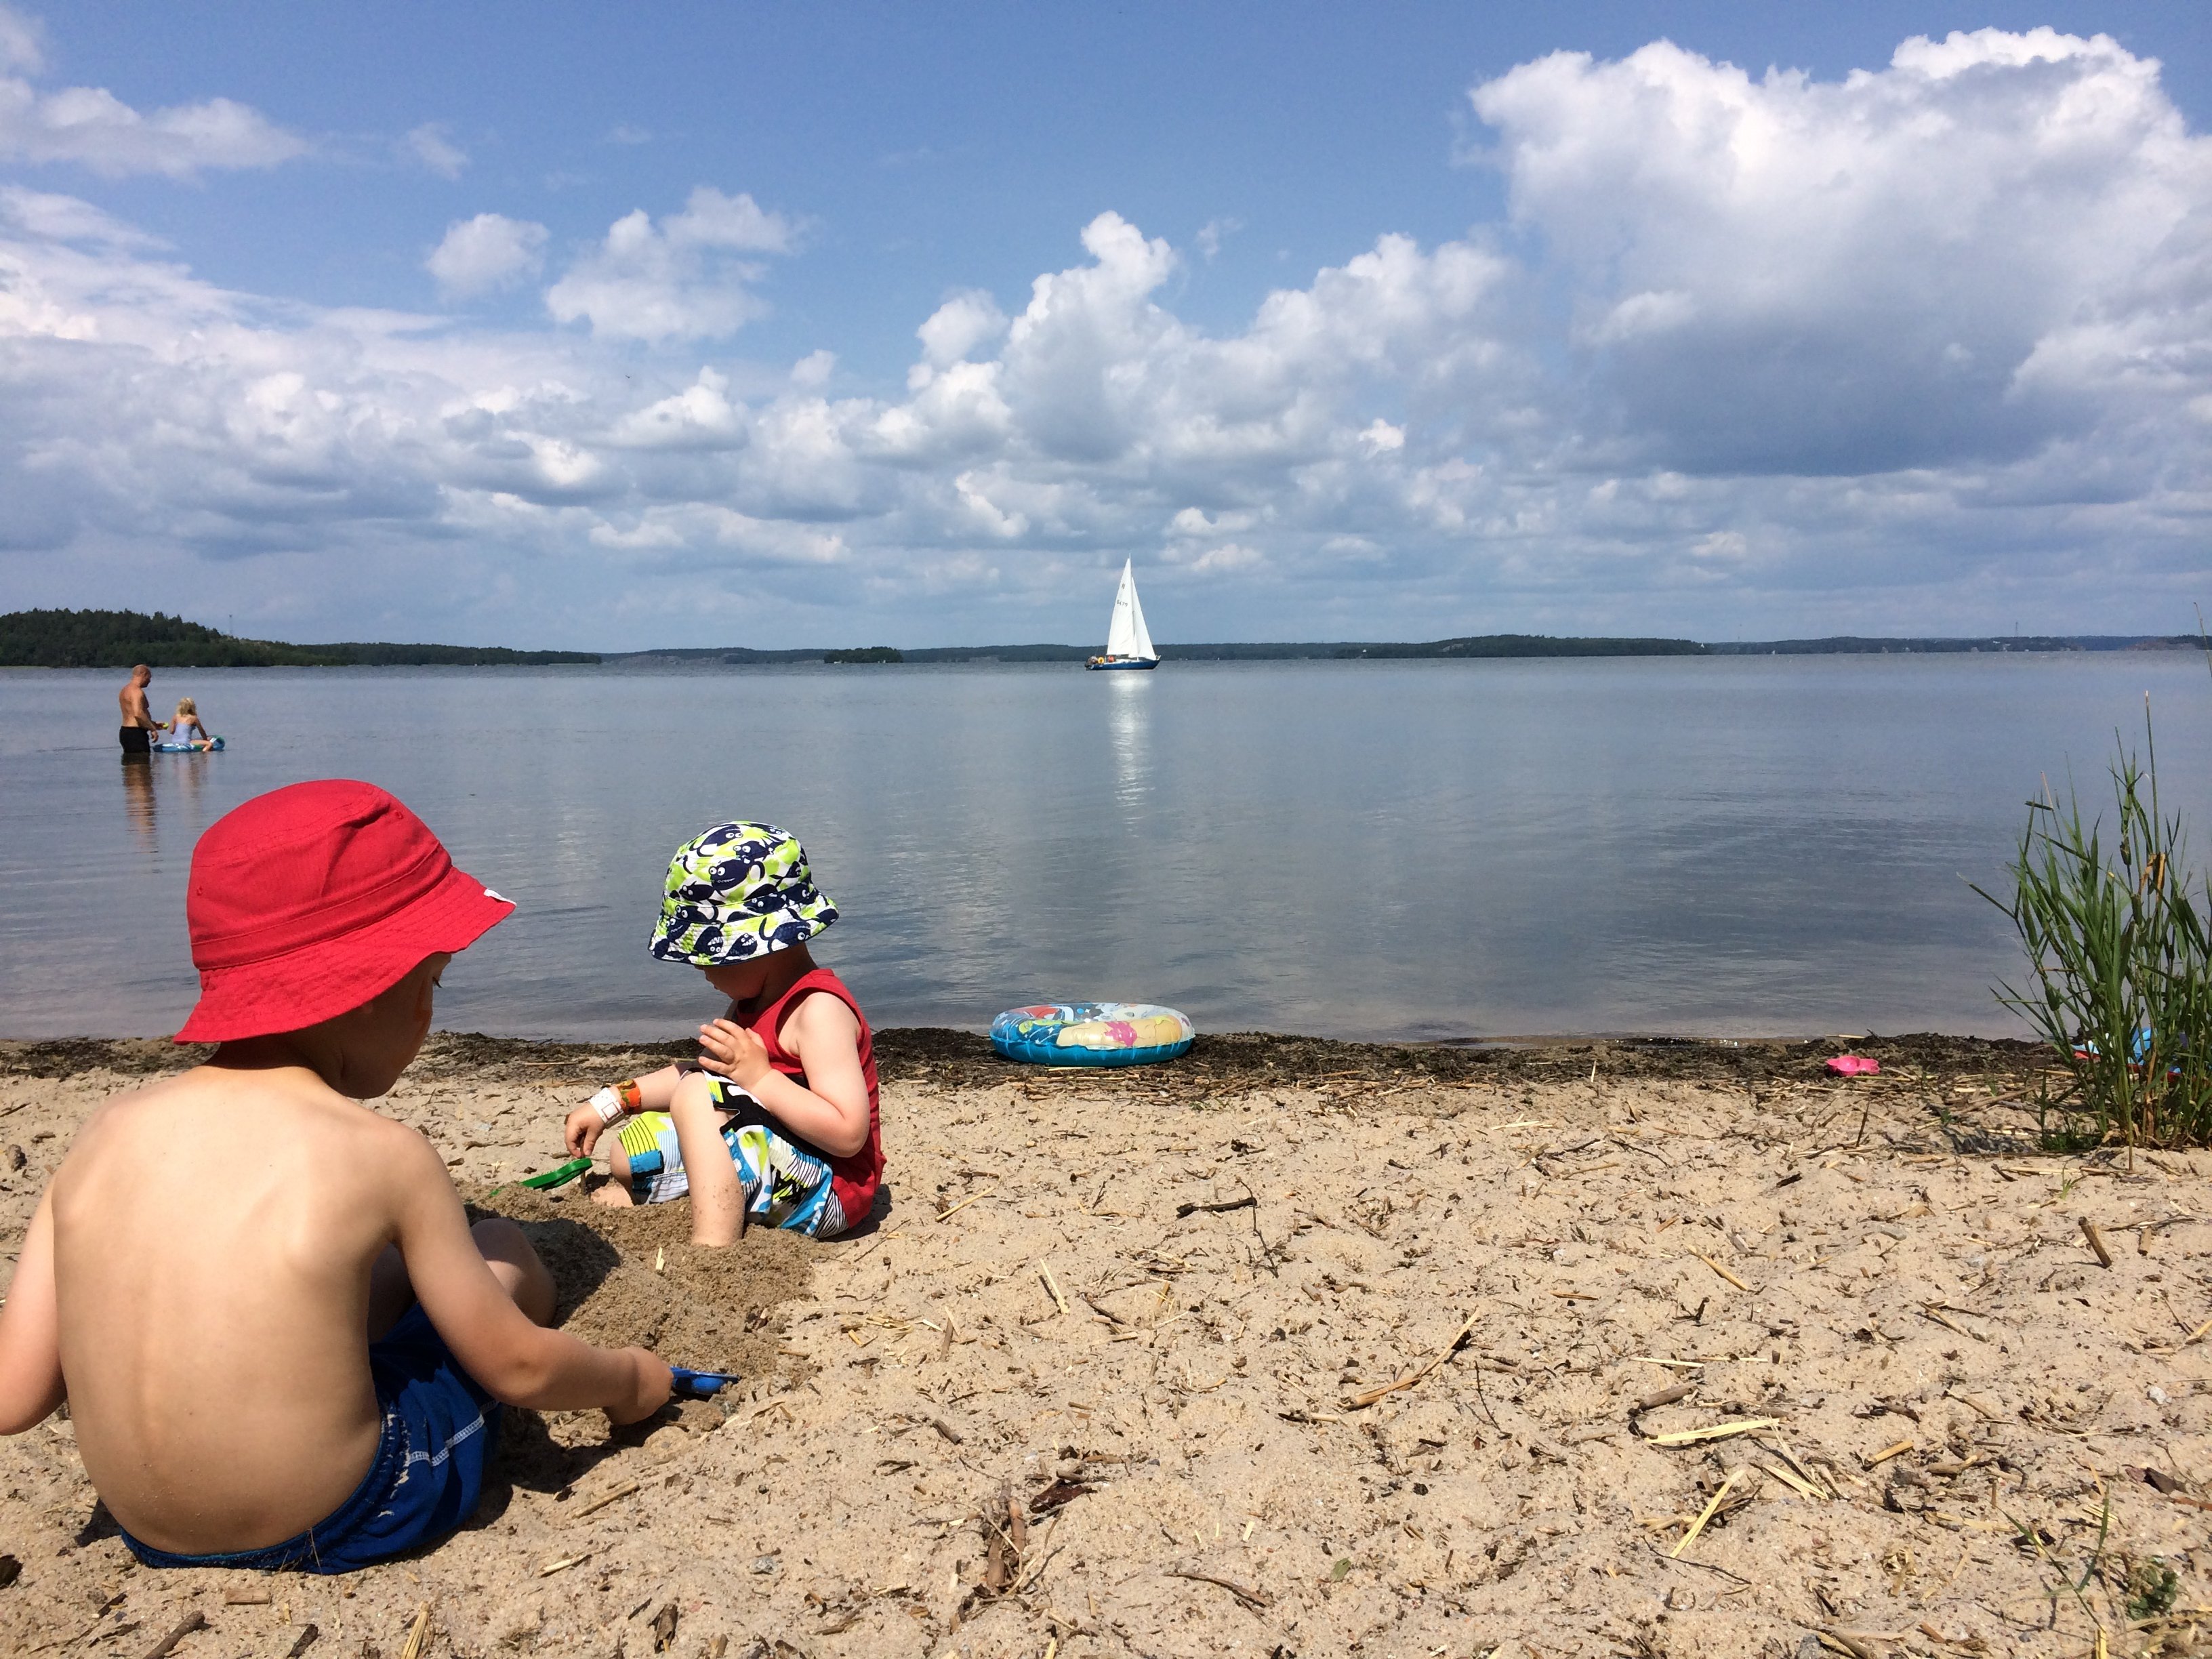 Barn leker på stranden och i vattnet. En segelbåt syns i bakgrunden.